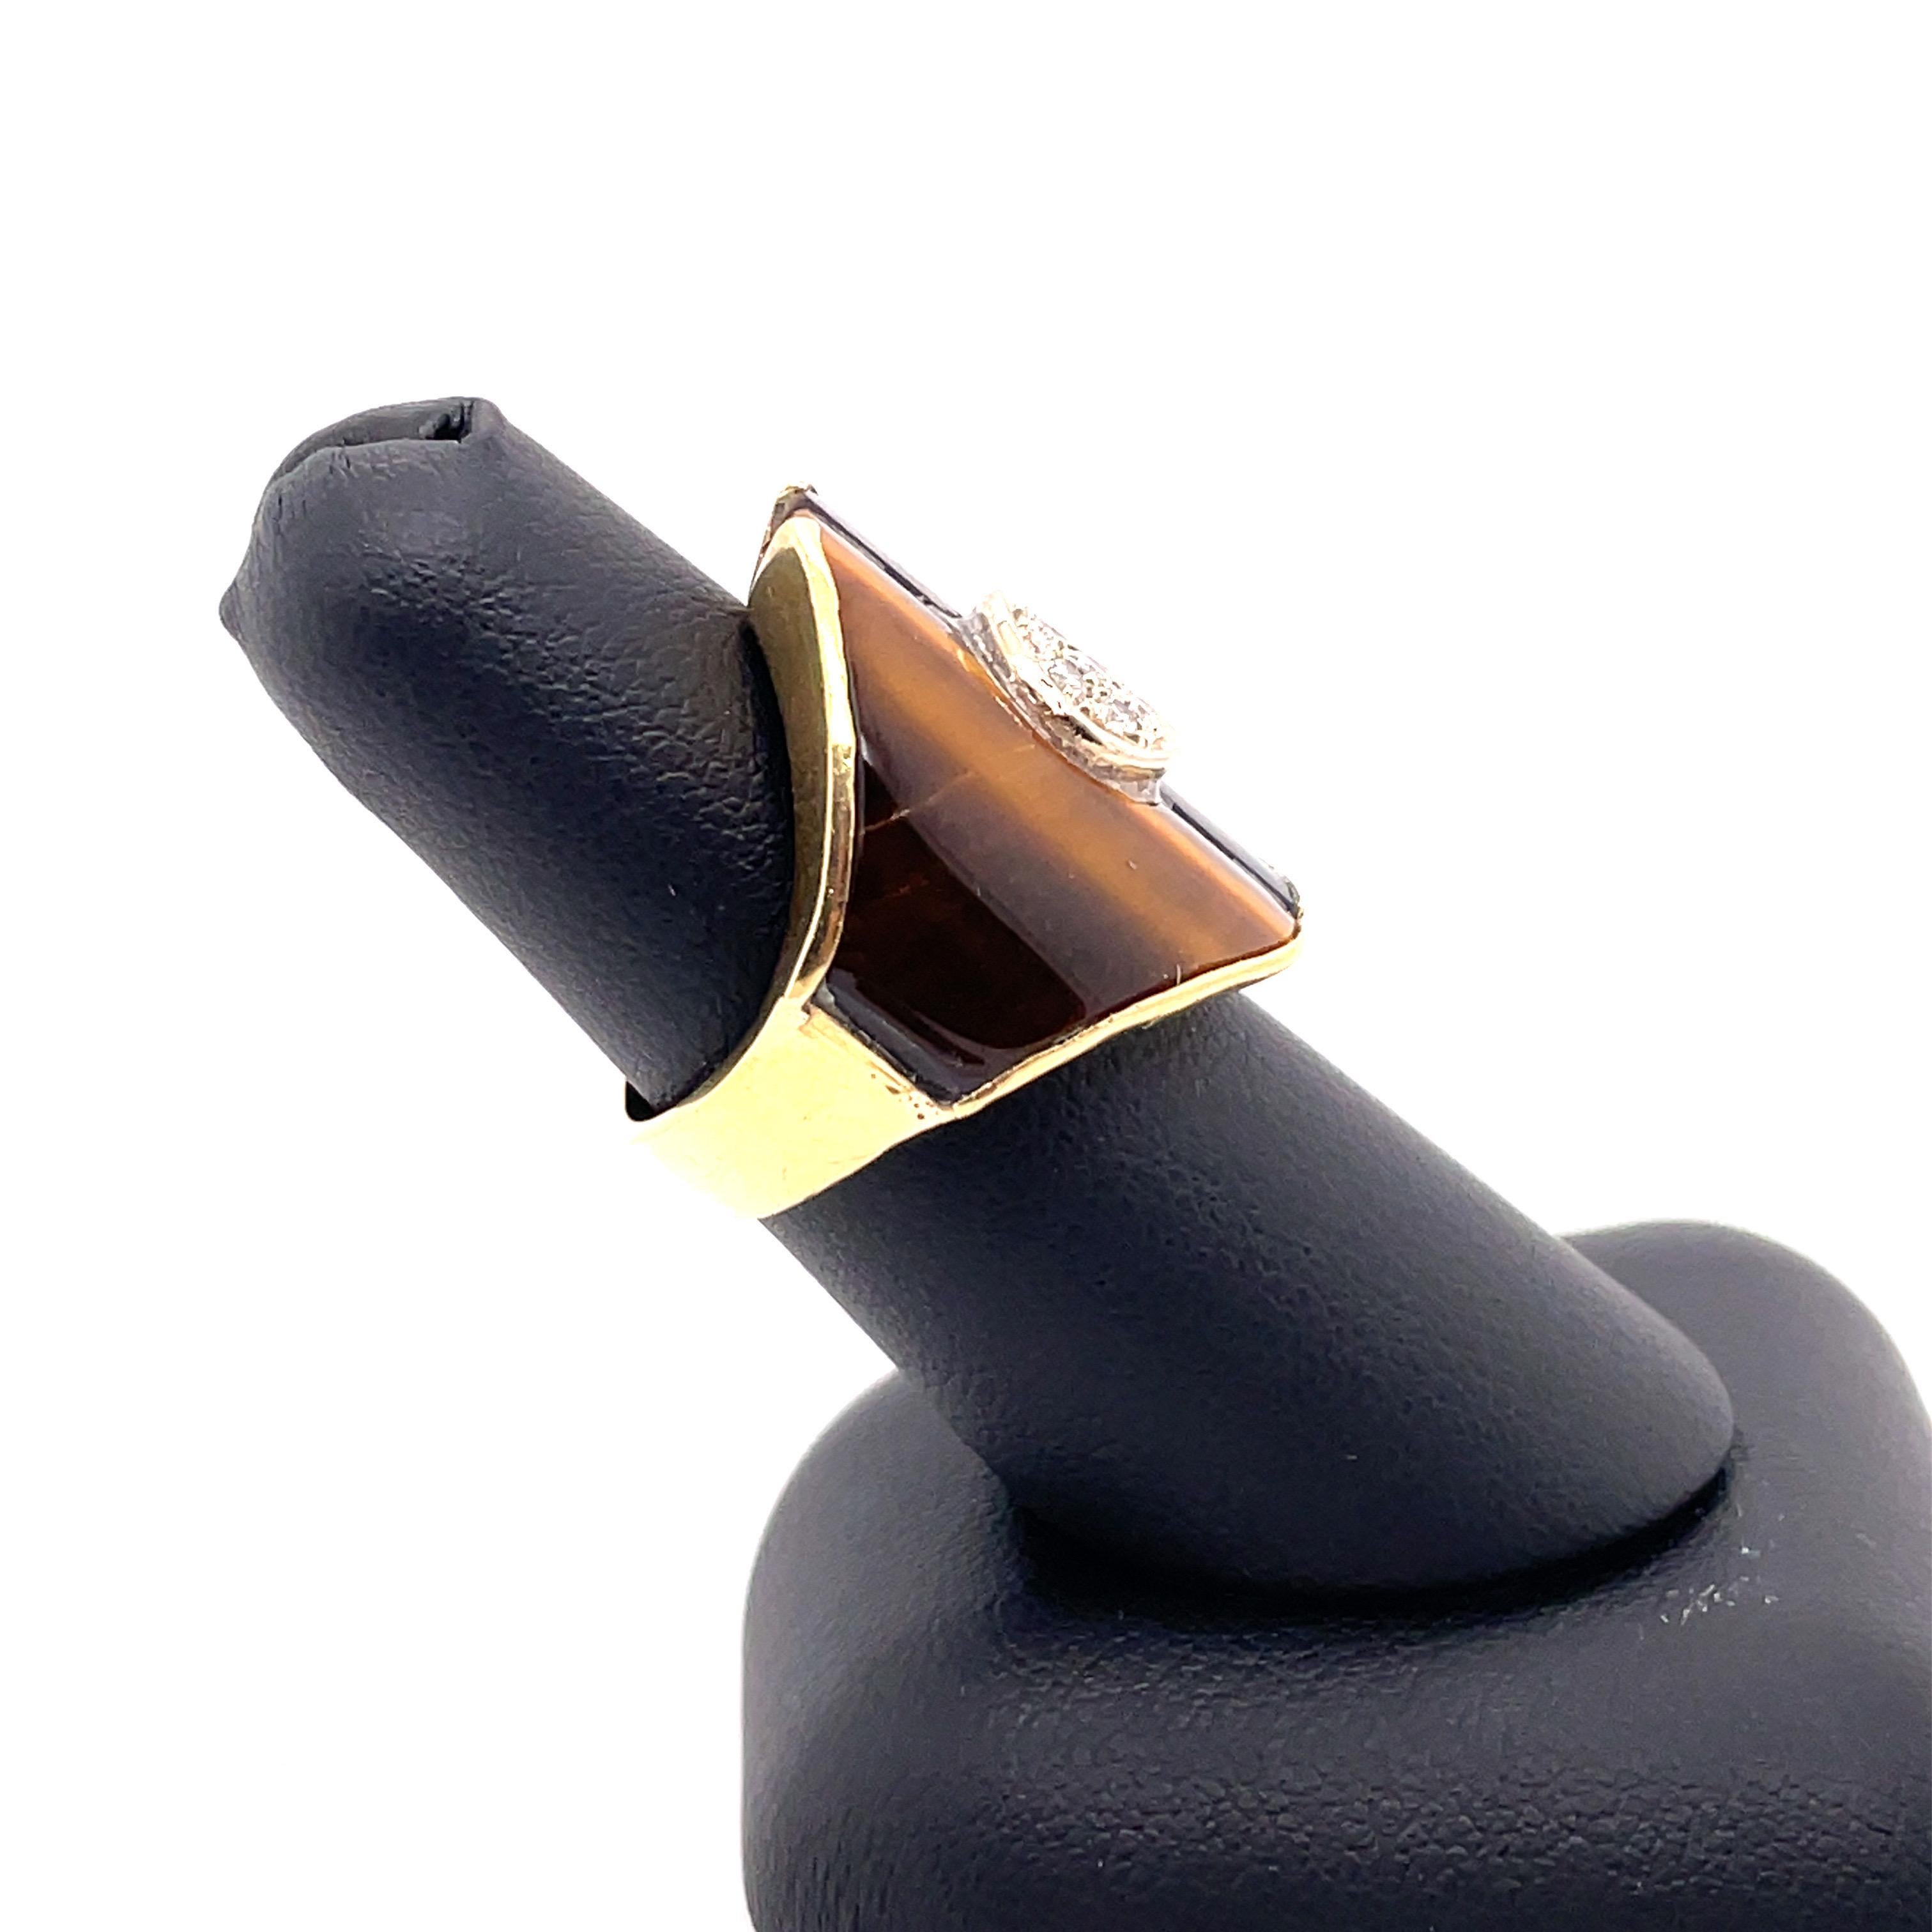 Unglaubliche Vintage Tigerauge Ring in einer solchen einzigartigen Zigarre Band Stil Retro-Ring mit hellen lebendigen Diamanten in der Mitte alle in 18kt Gelbgold gesetzt akzentuiert.